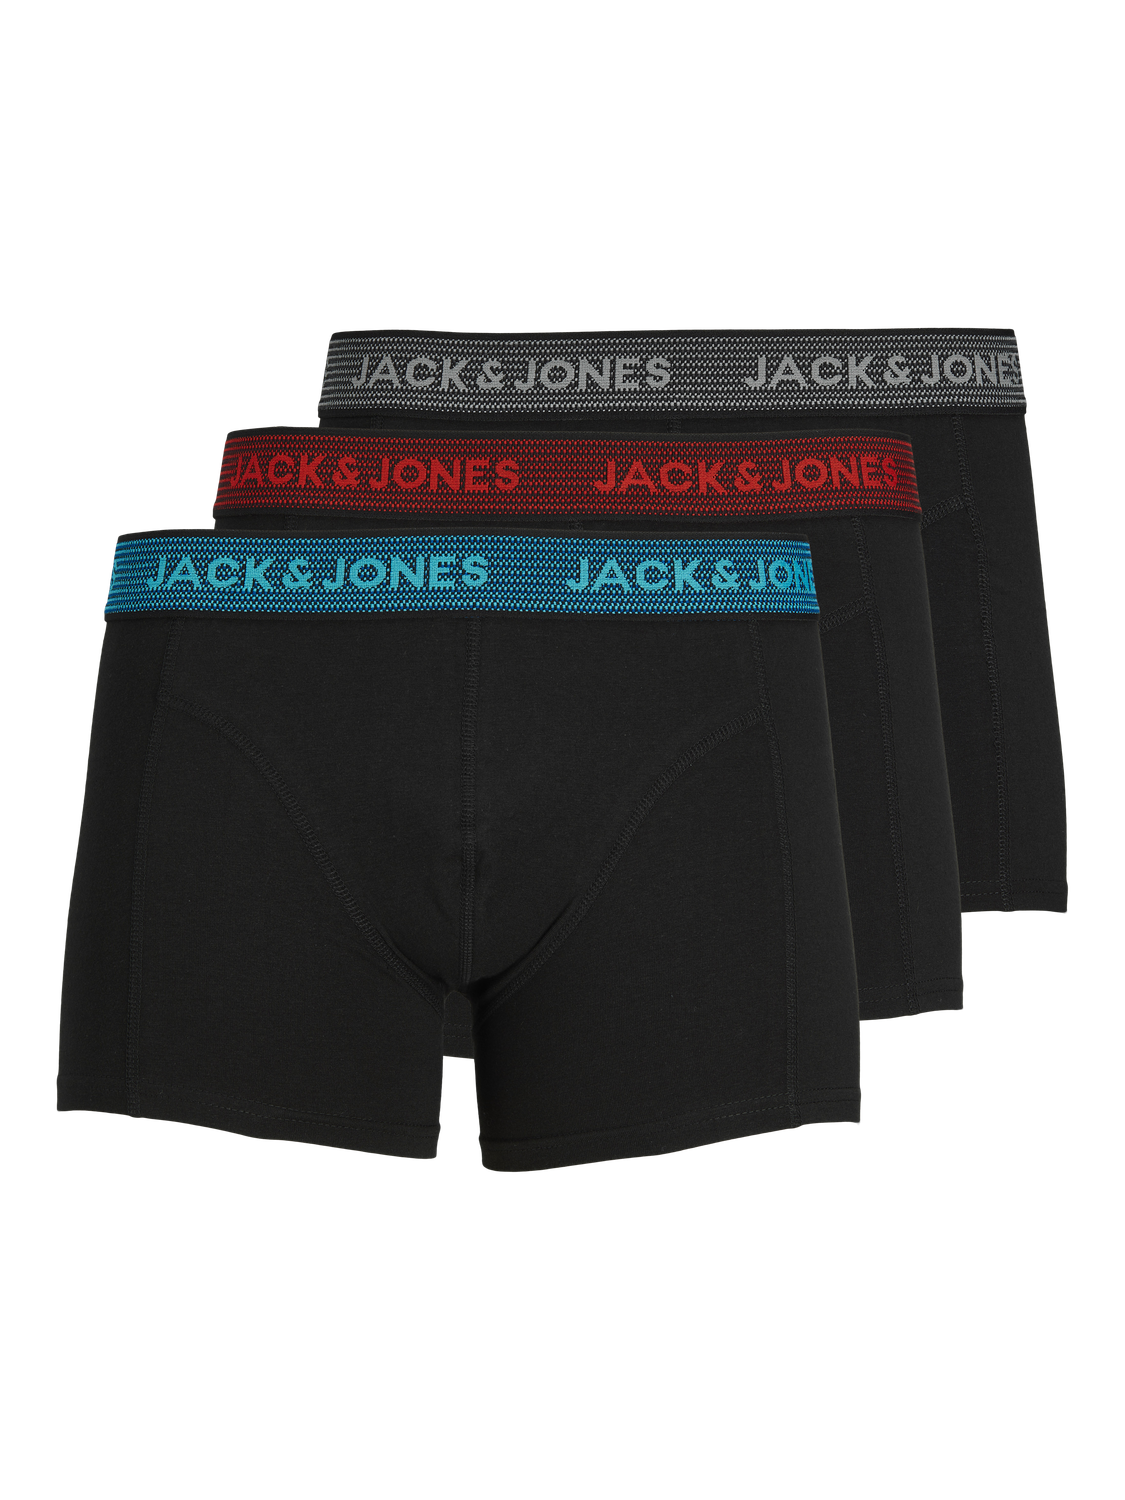 Jack Jones Mens New 3 Pack Trunks Boxer Sh